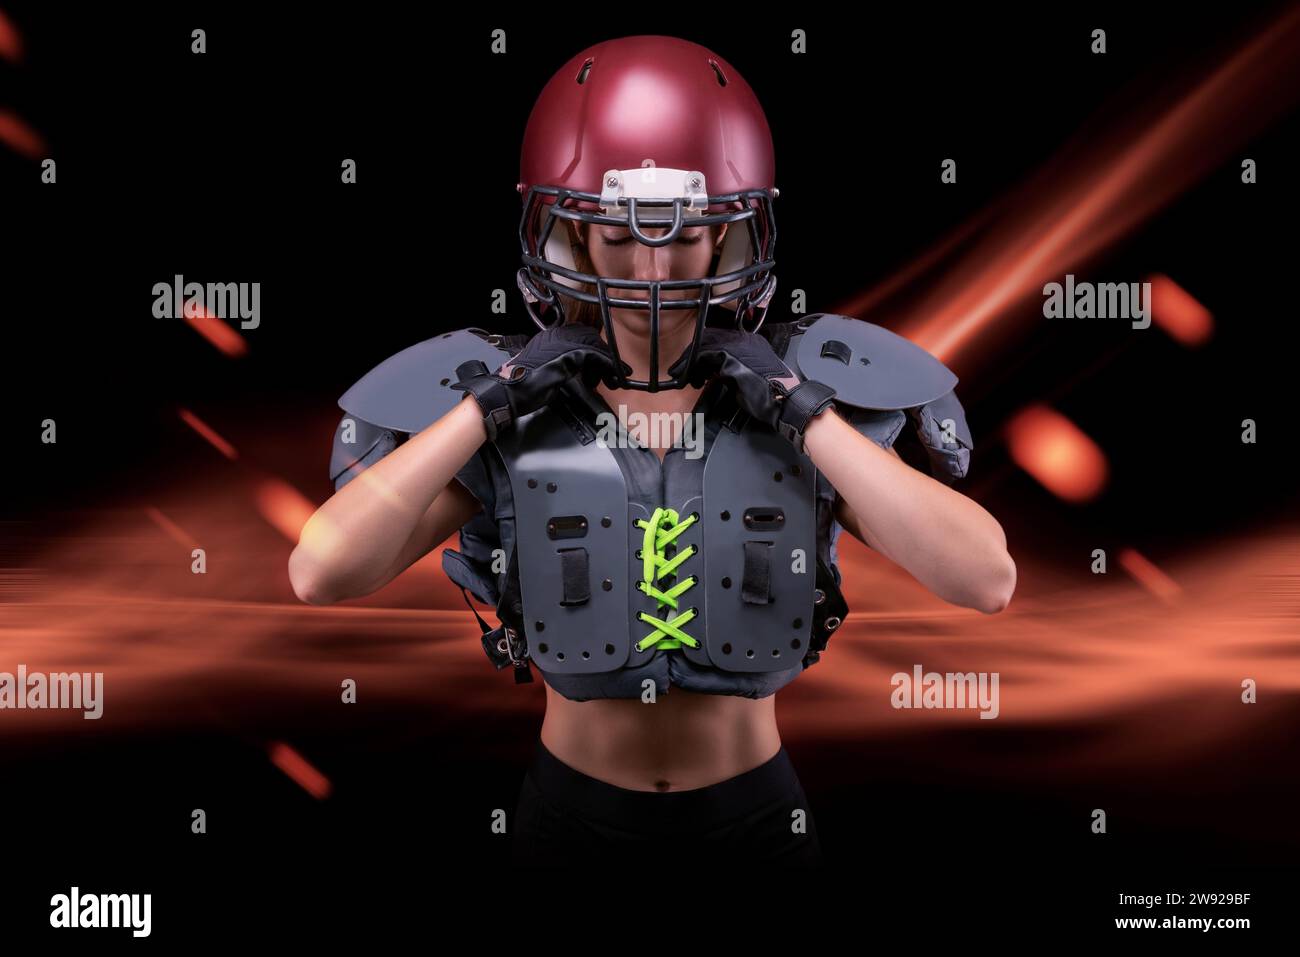 Brutales Porträt eines Mädchens in Uniform eines American Football-Mannschaftsspielers. Gerätewerbung. Sportkonzept. Schulterpolster. Gemischte Medien Stockfoto